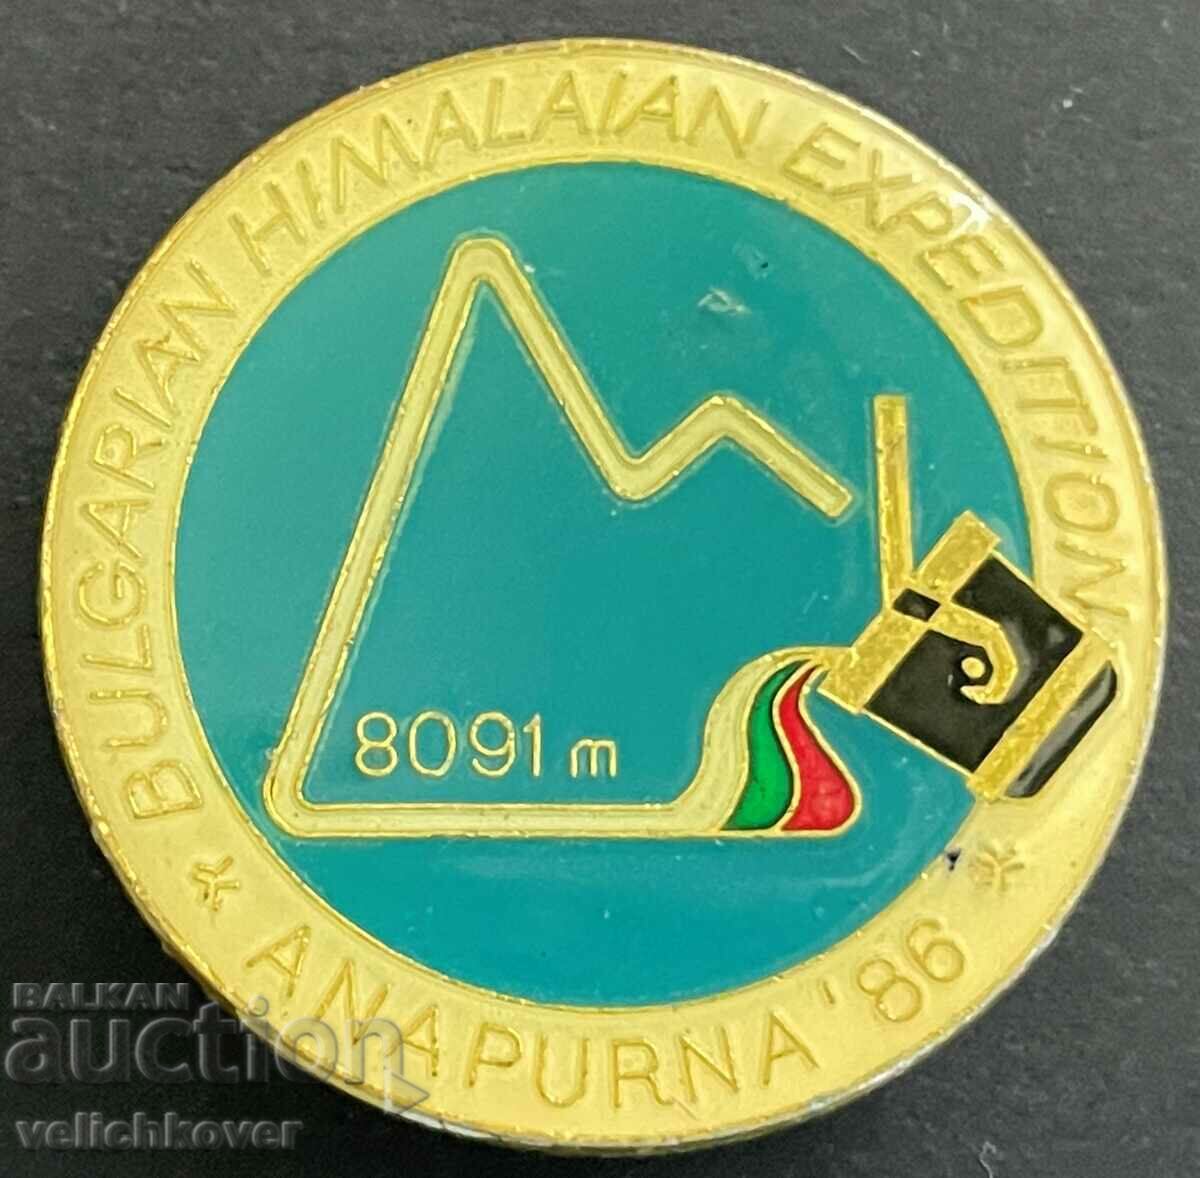 33830 България знак Алпинистка експедиция Анапурна Хималаи